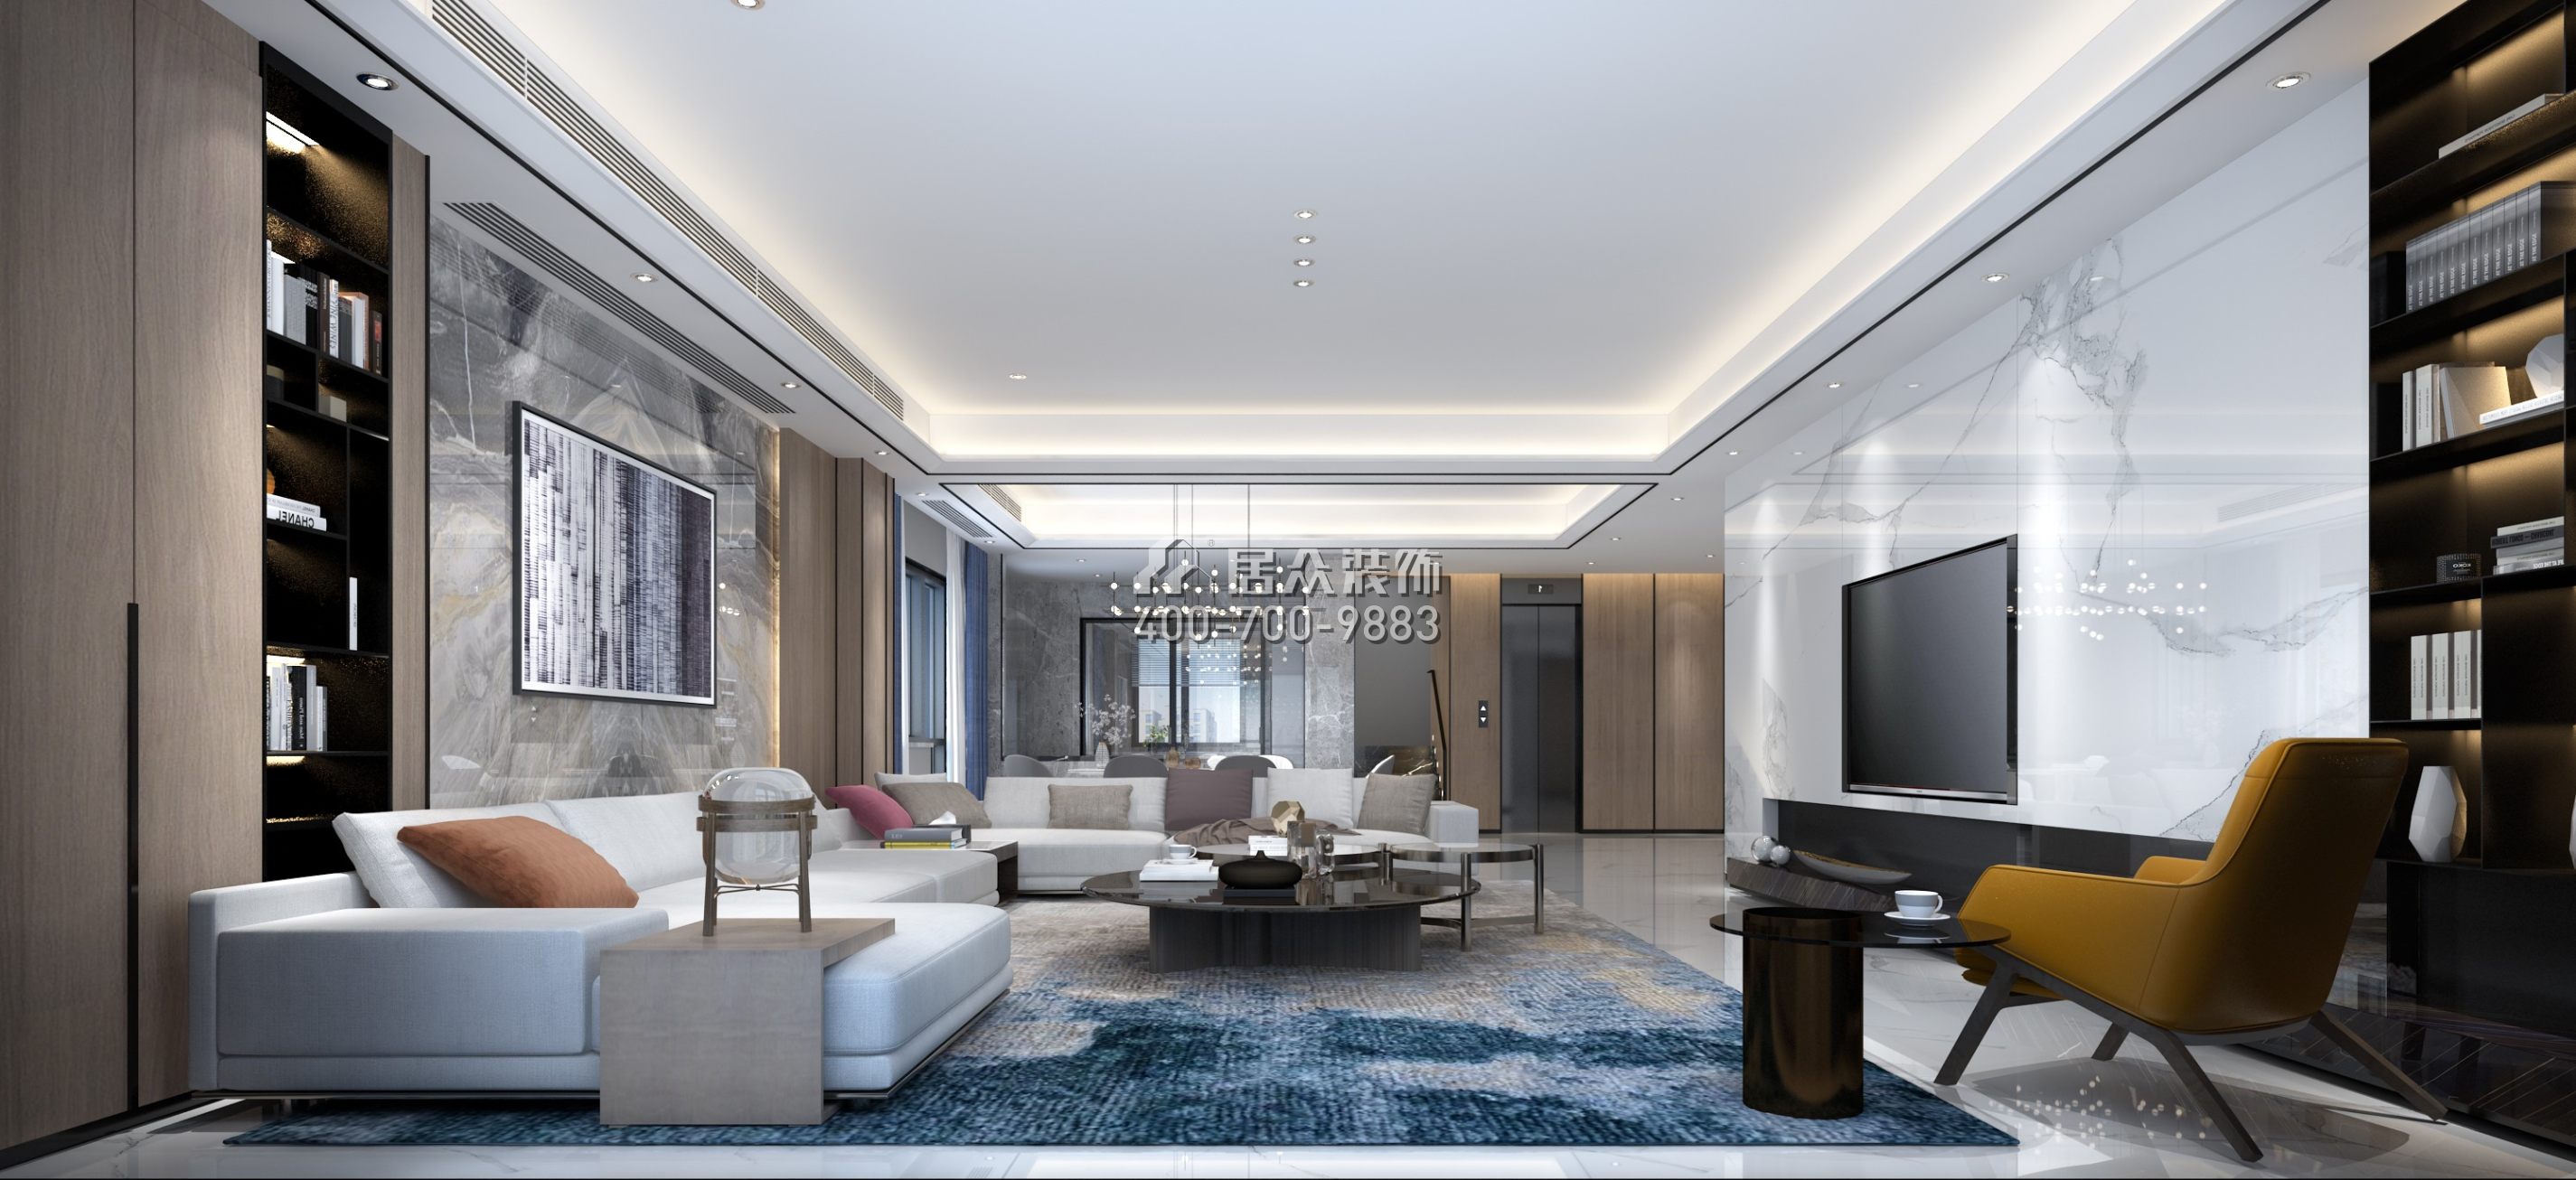 青龍灣布拉莊園350平方米現代簡約風格別墅戶型客廳裝修效果圖